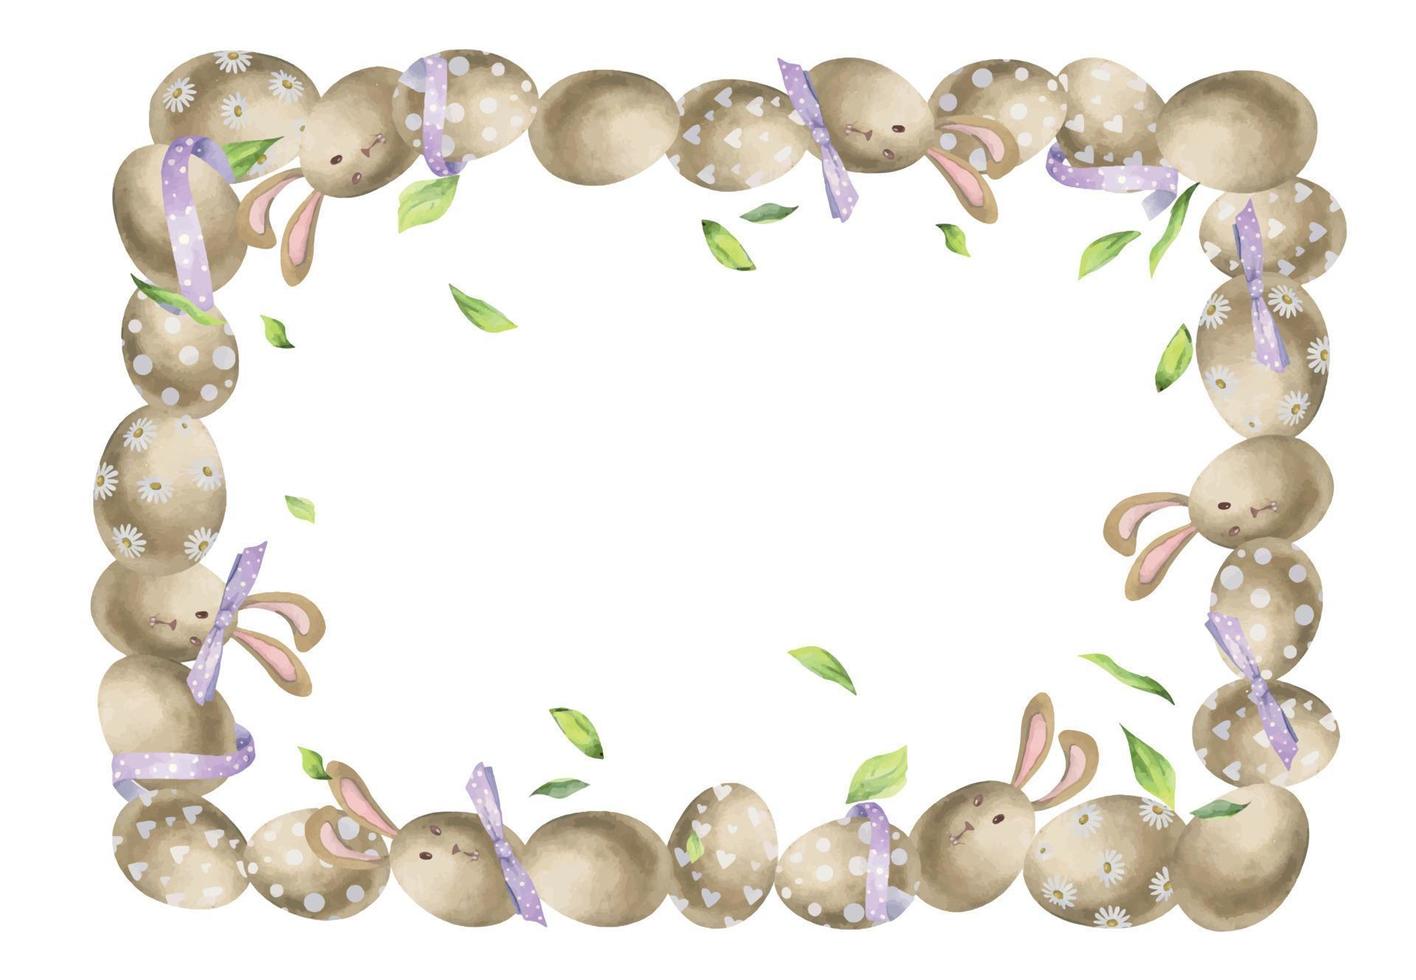 Aquarell Hand gezeichnet Ostern Feier Clip Art. Rand Rahmen von Eier, Verbeugungen, Grün Blätter, Hasen. Pastell- Farbe. isoliert auf Weiß Hintergrund. zum Einladungen, Geschenke, Gruß Karten, drucken, Textil- vektor